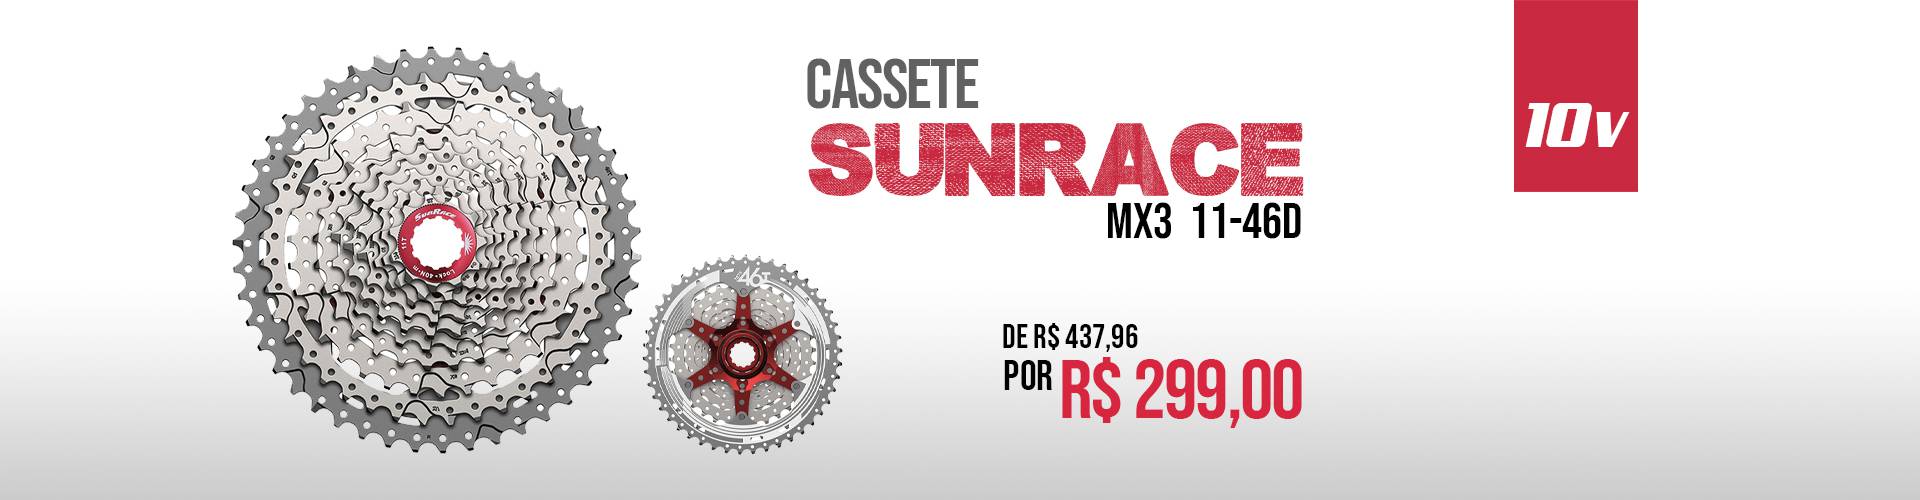 Cassete Sunrace MX3